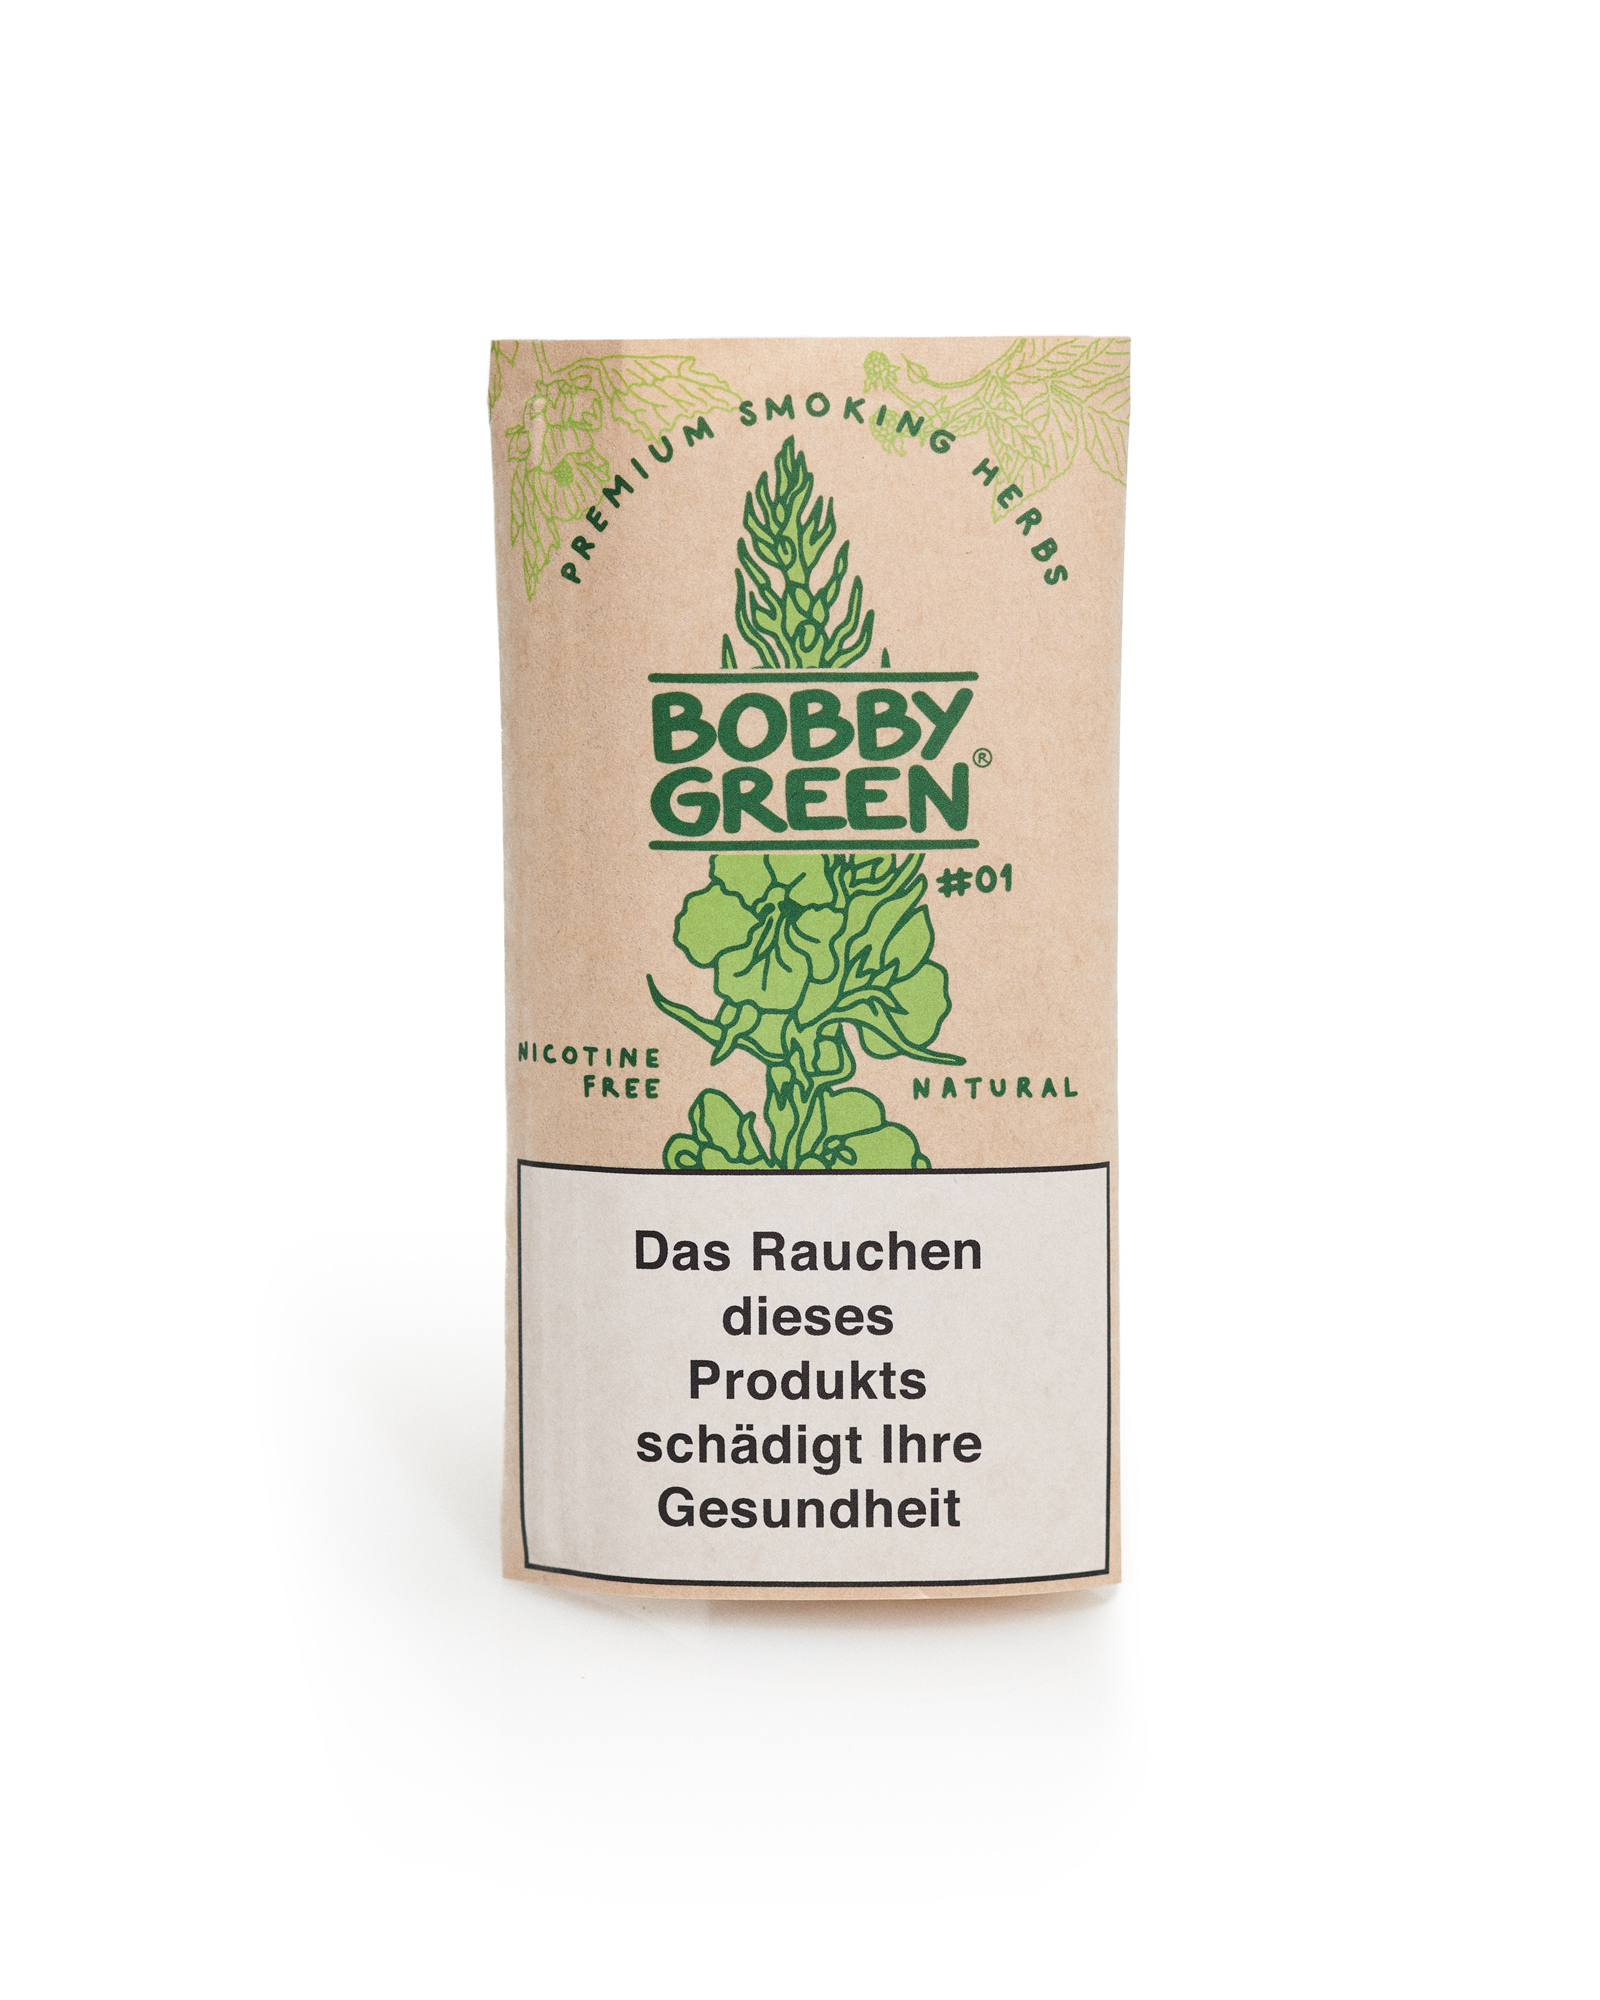 BOBBY GREEN Classic #01 ohne Nikotin & ohne Zusatzstoffe